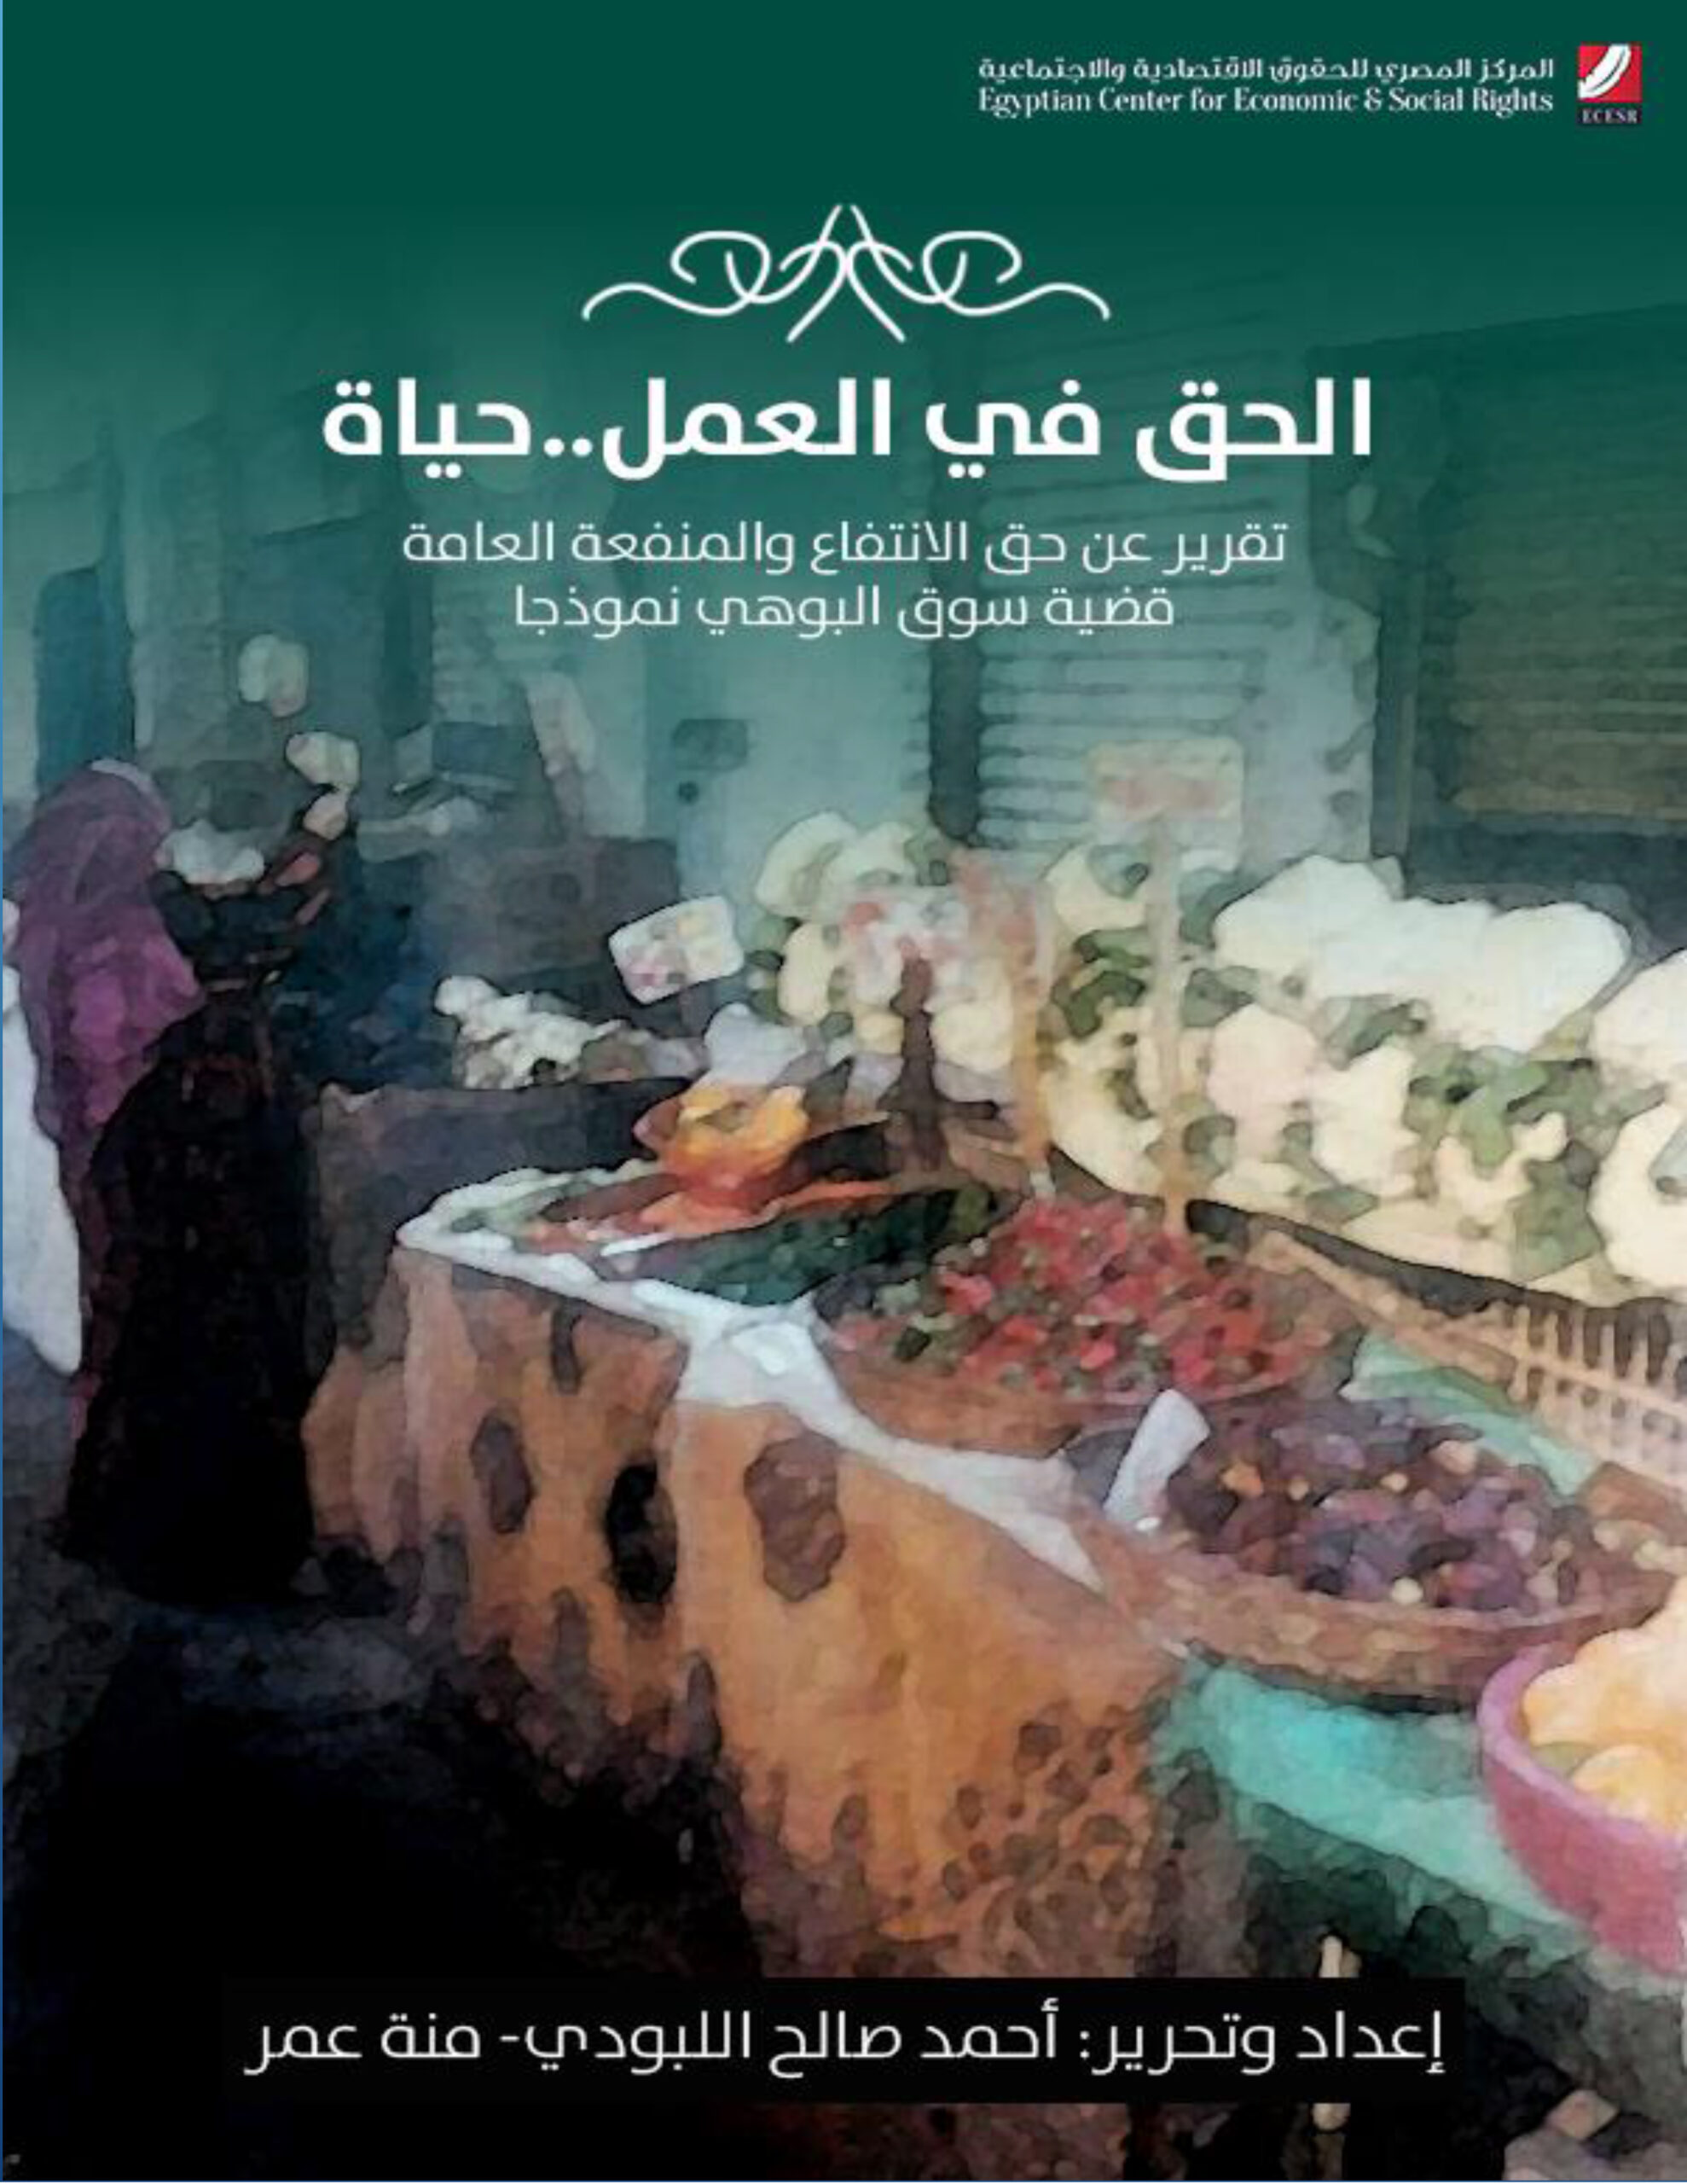 تقرير بشأن “الحق في العمل حياة”: سوق البوهي في منطقة أمبابة نموذجا